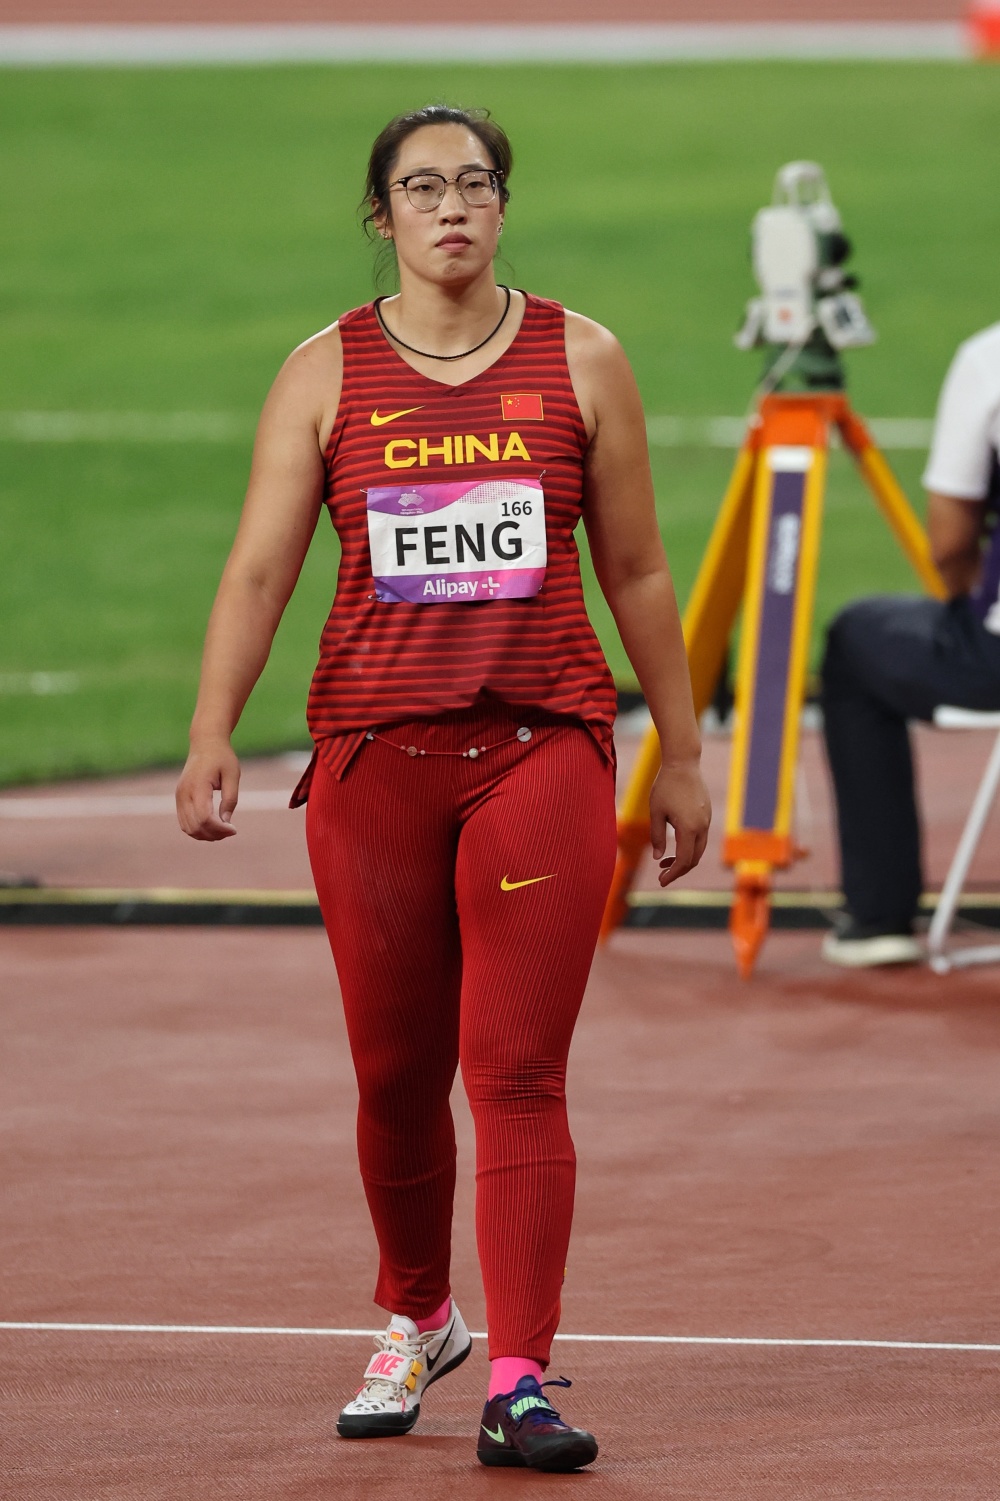 中国女子铁饼运动员图片